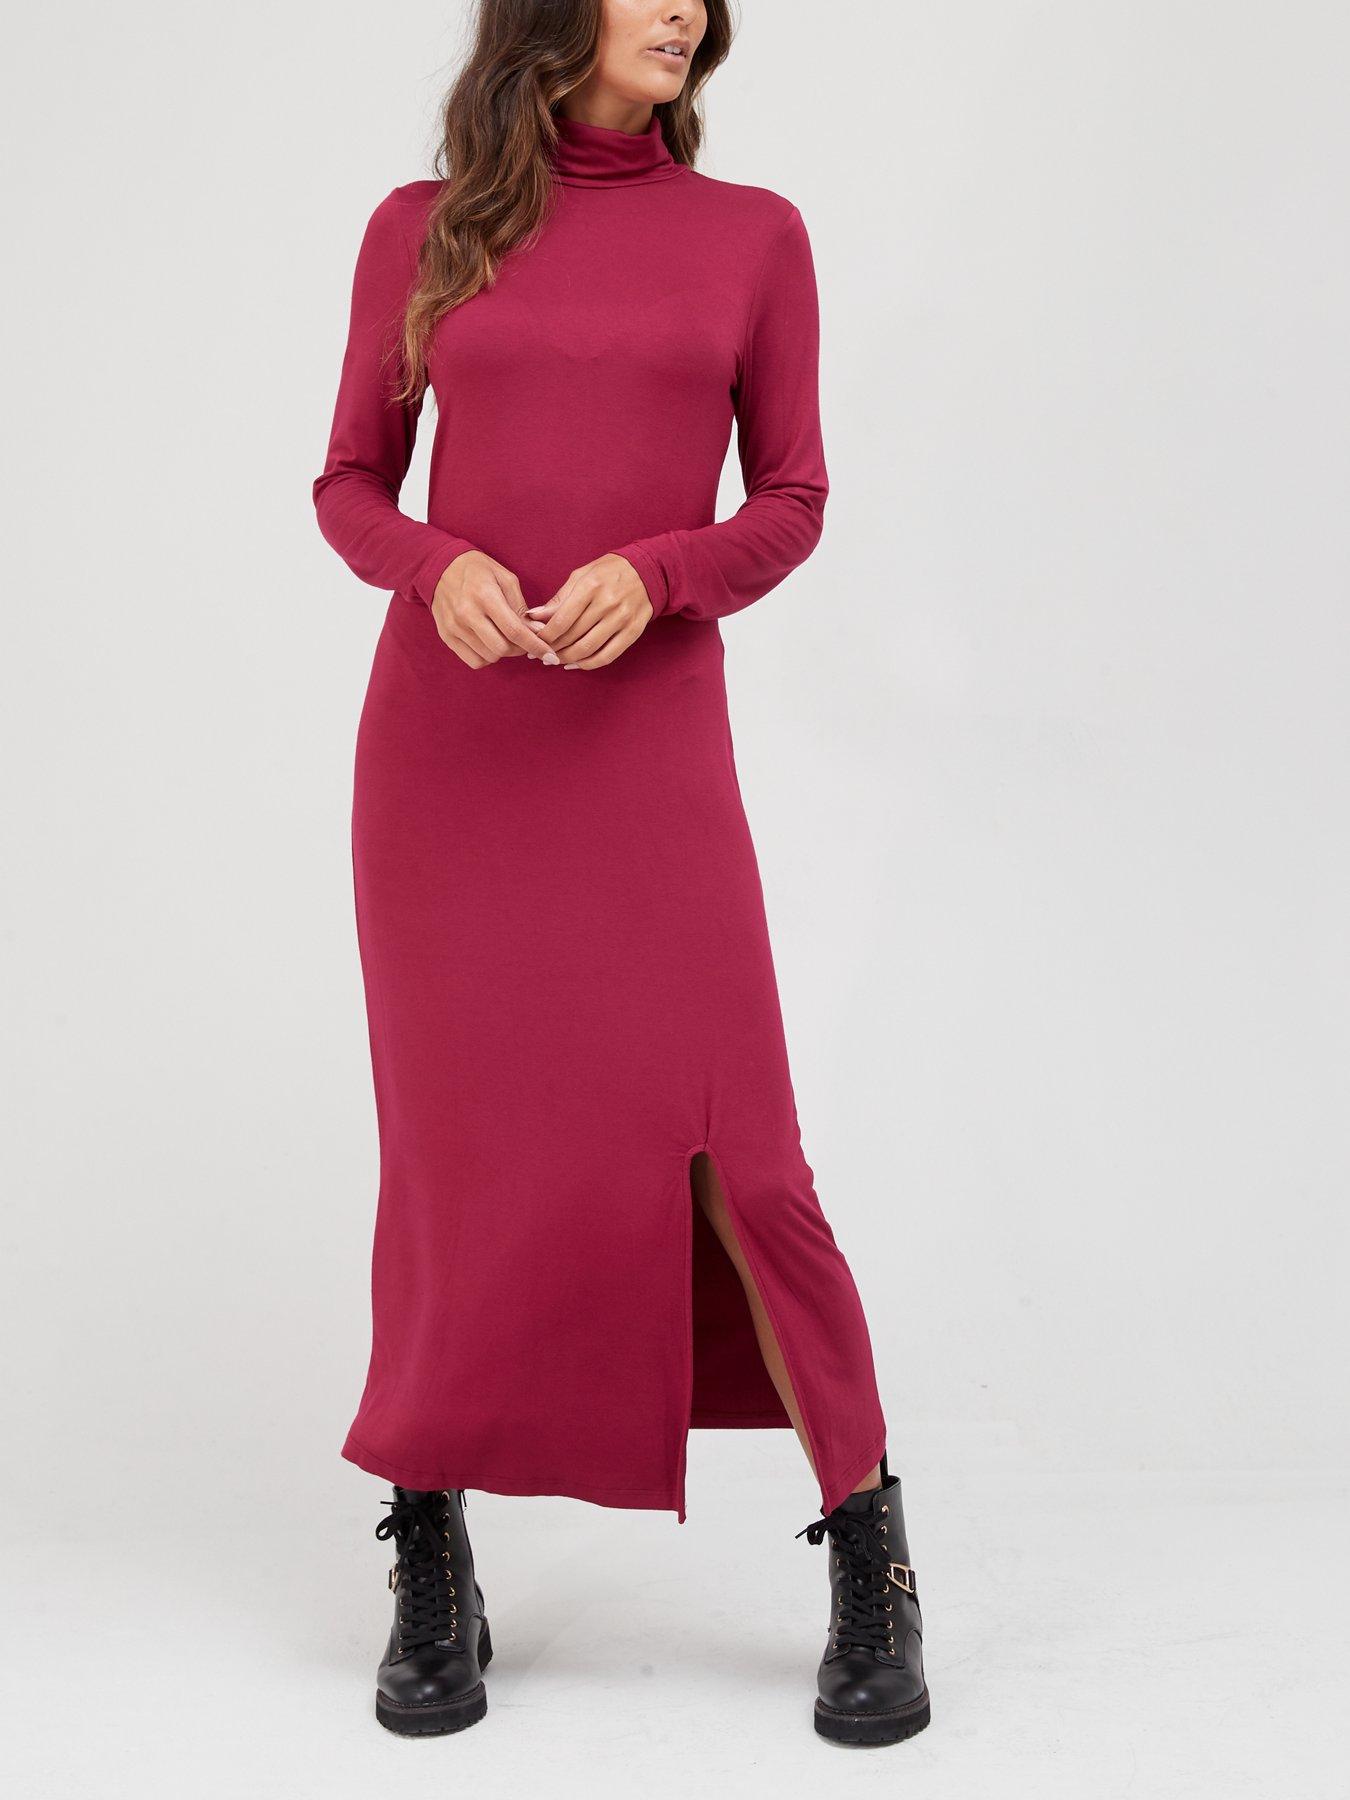 Details about   Elegant Women's Straight Dress Cotton Printed Beige & Pink Round Neck Dress